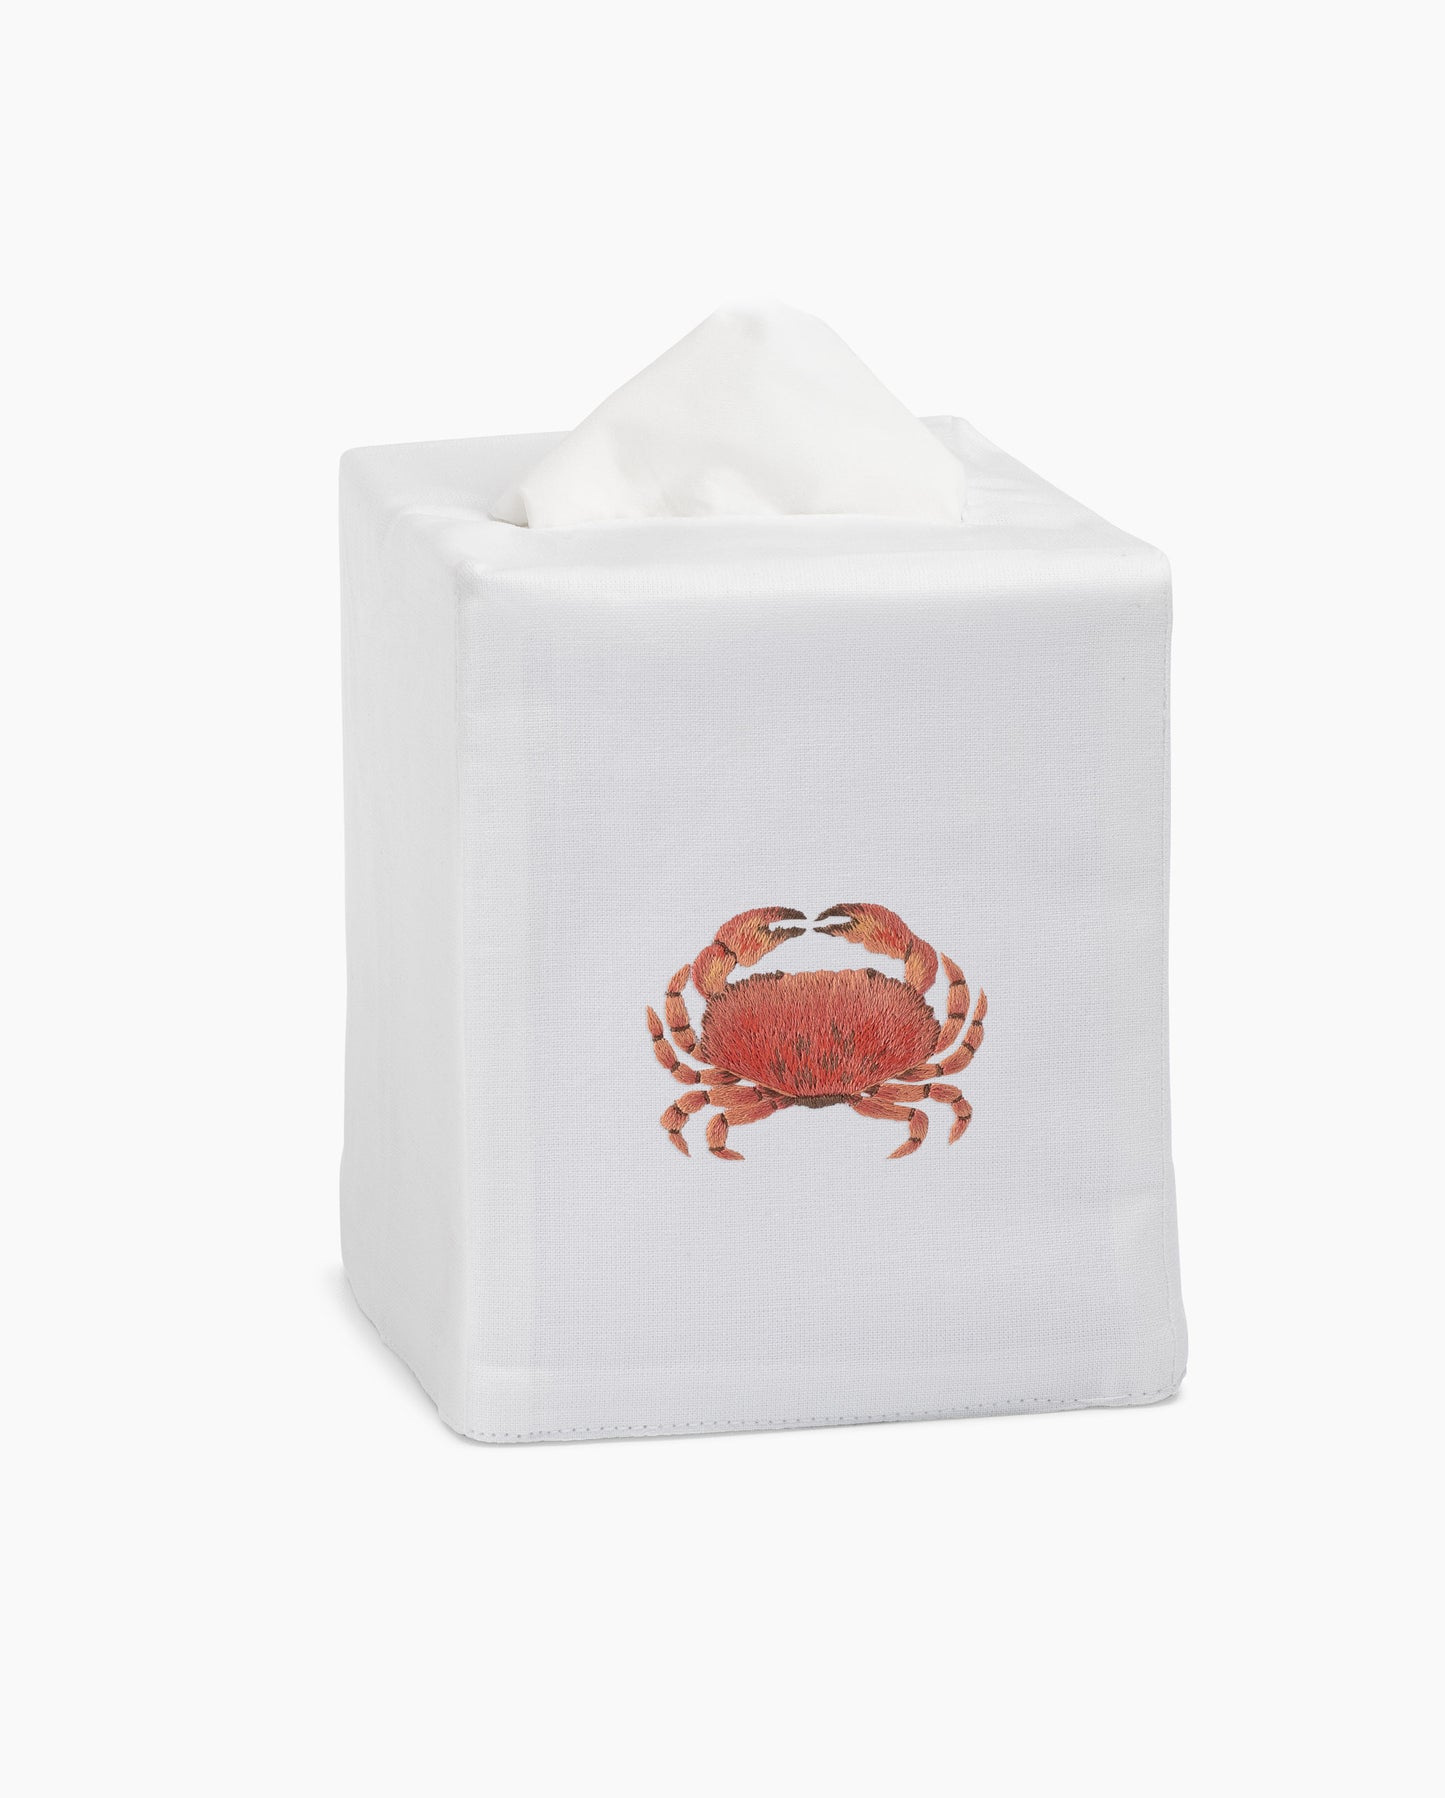 Crab Modern Tissue Box Cover